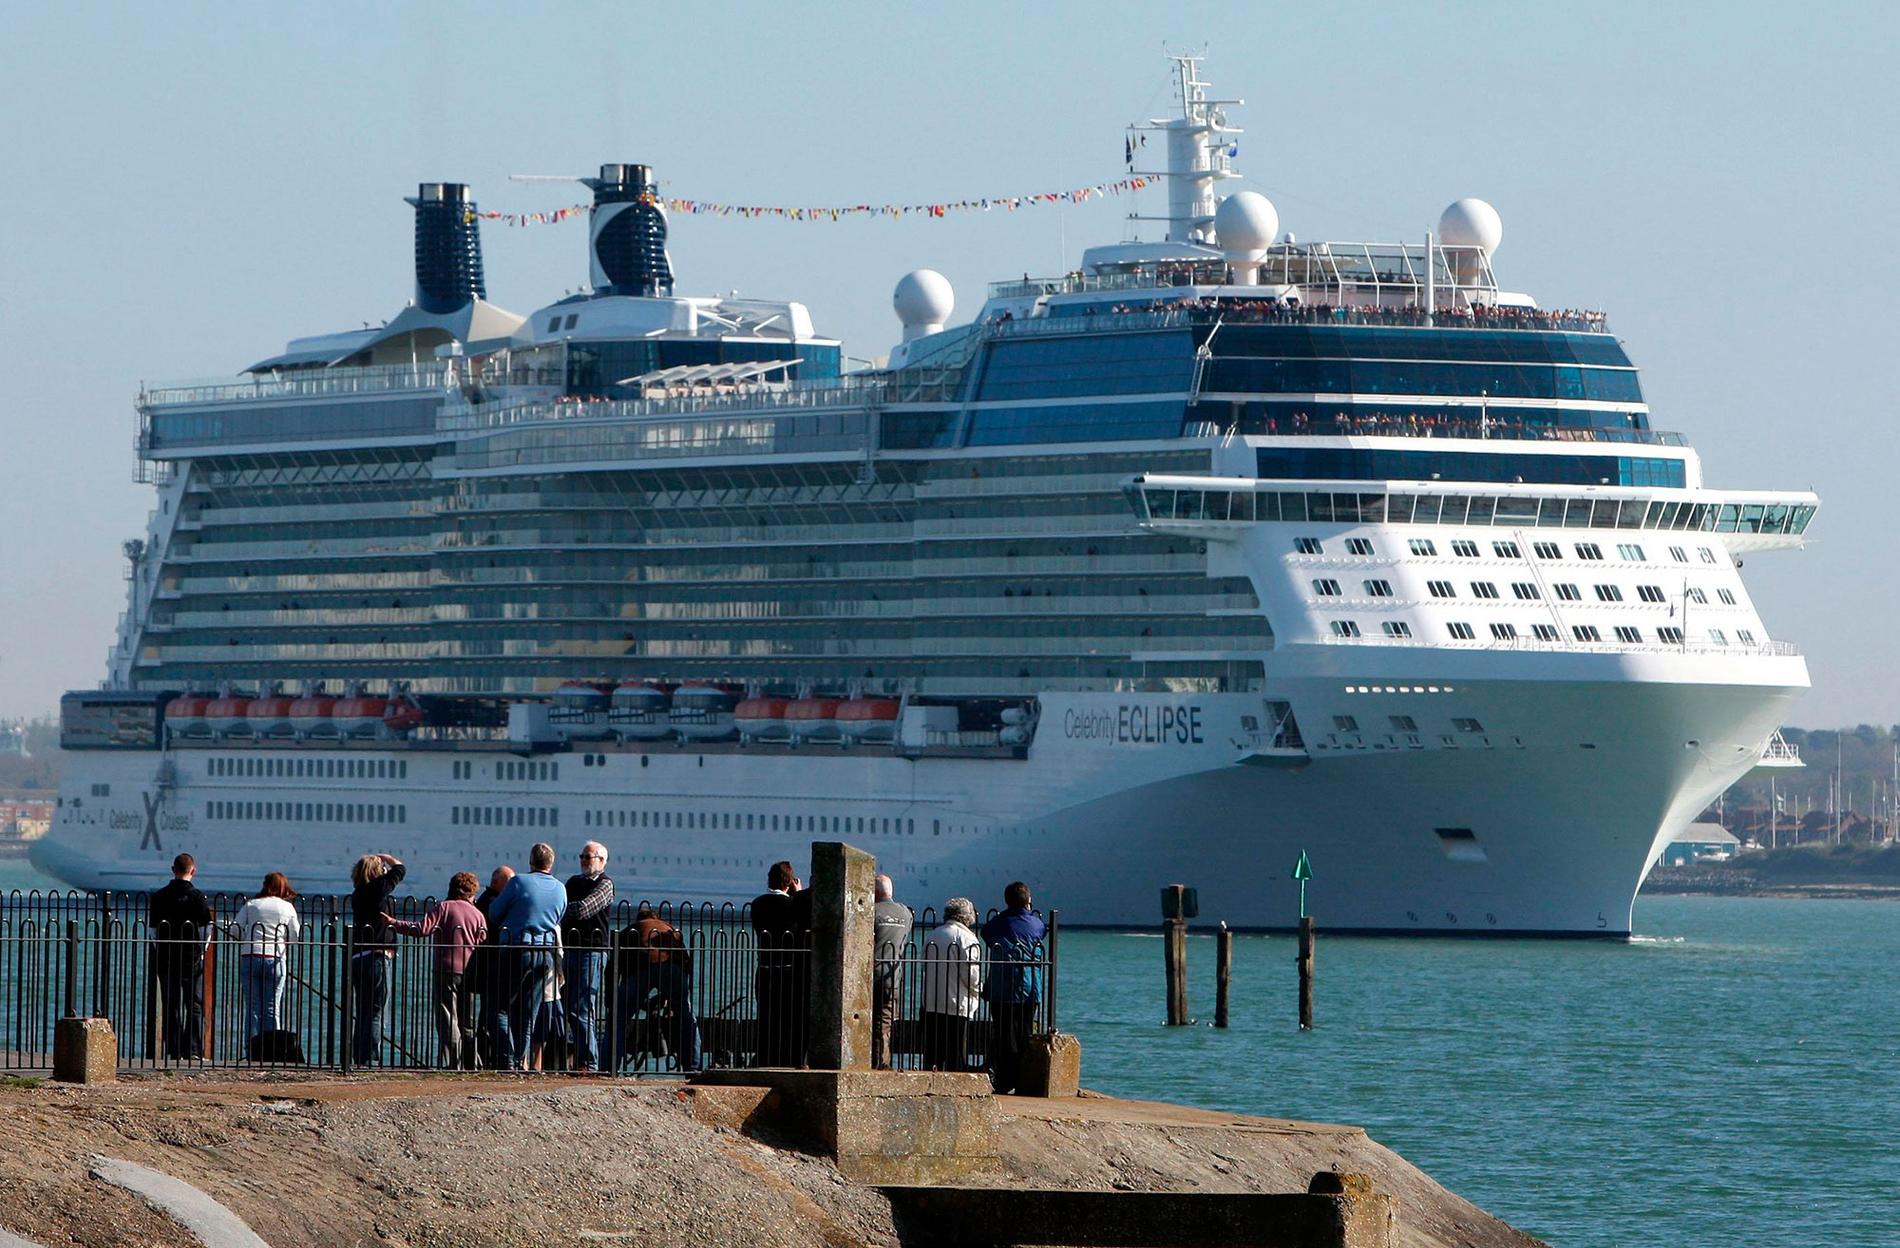 Fartyget Celebrity Ecklipse hade premiär 2010, är 315 meter långt och tar 
2850 gäster.